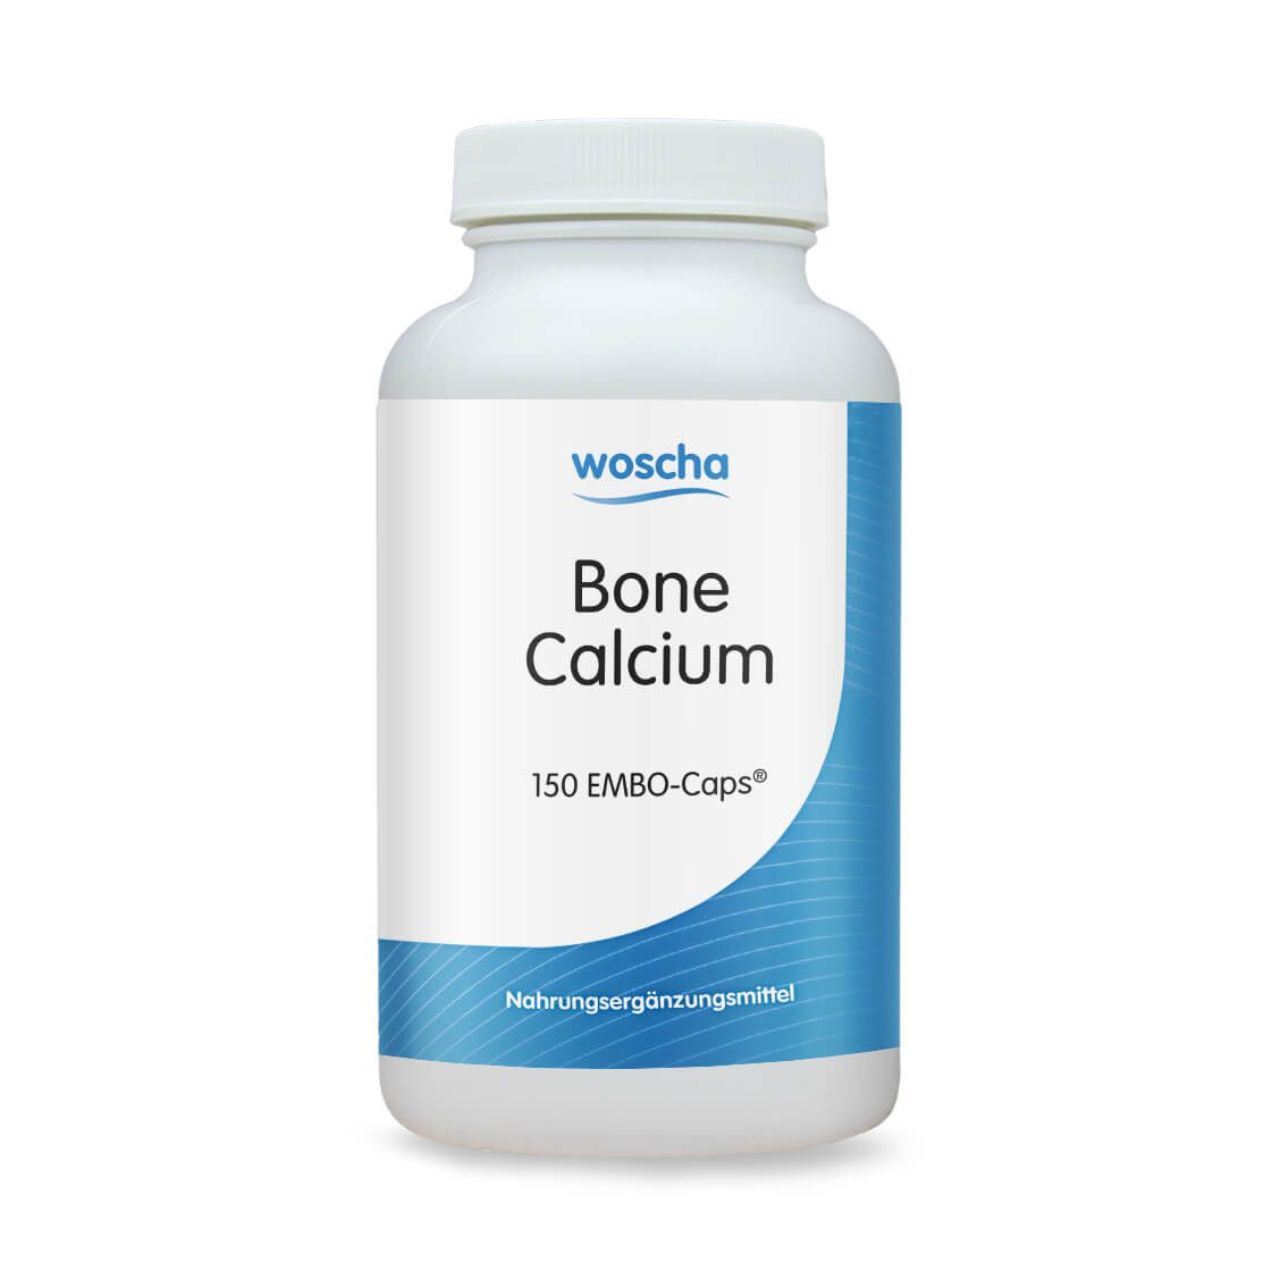 Woscha Bone Calcium von podo medi beinhaltet 150 Kapseln